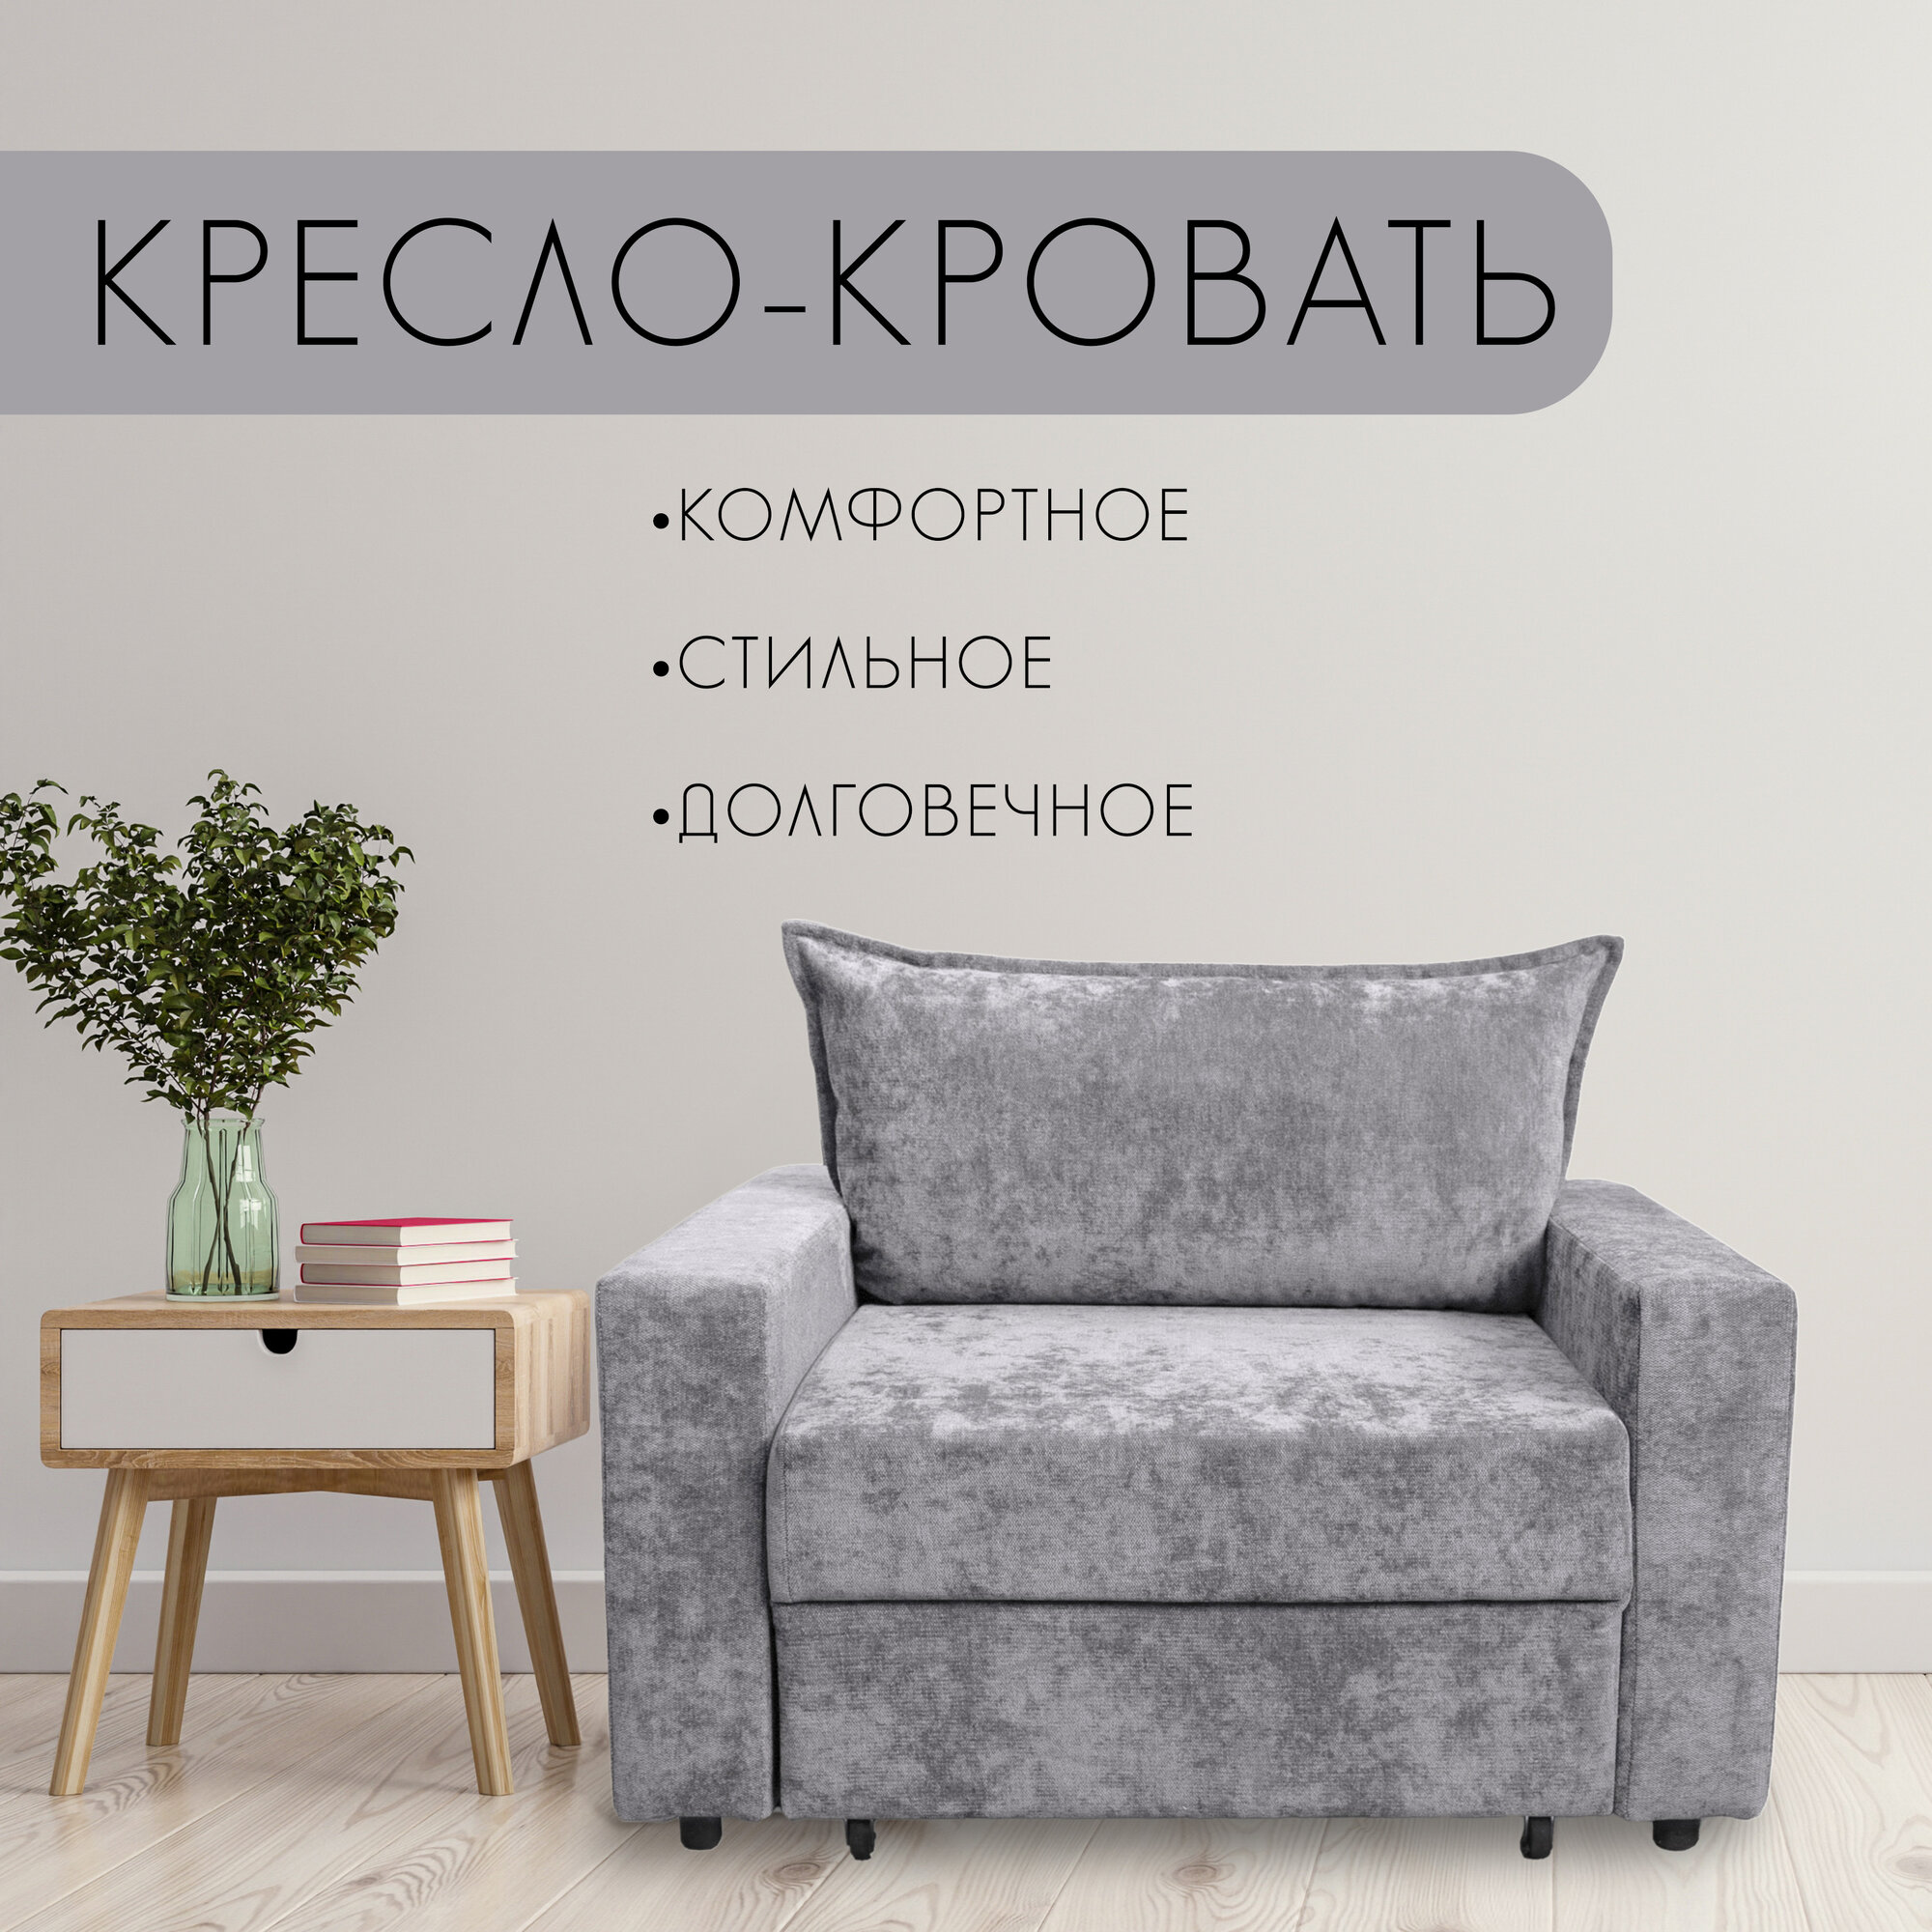 Кресло-кровать, 185х80, цвет серый